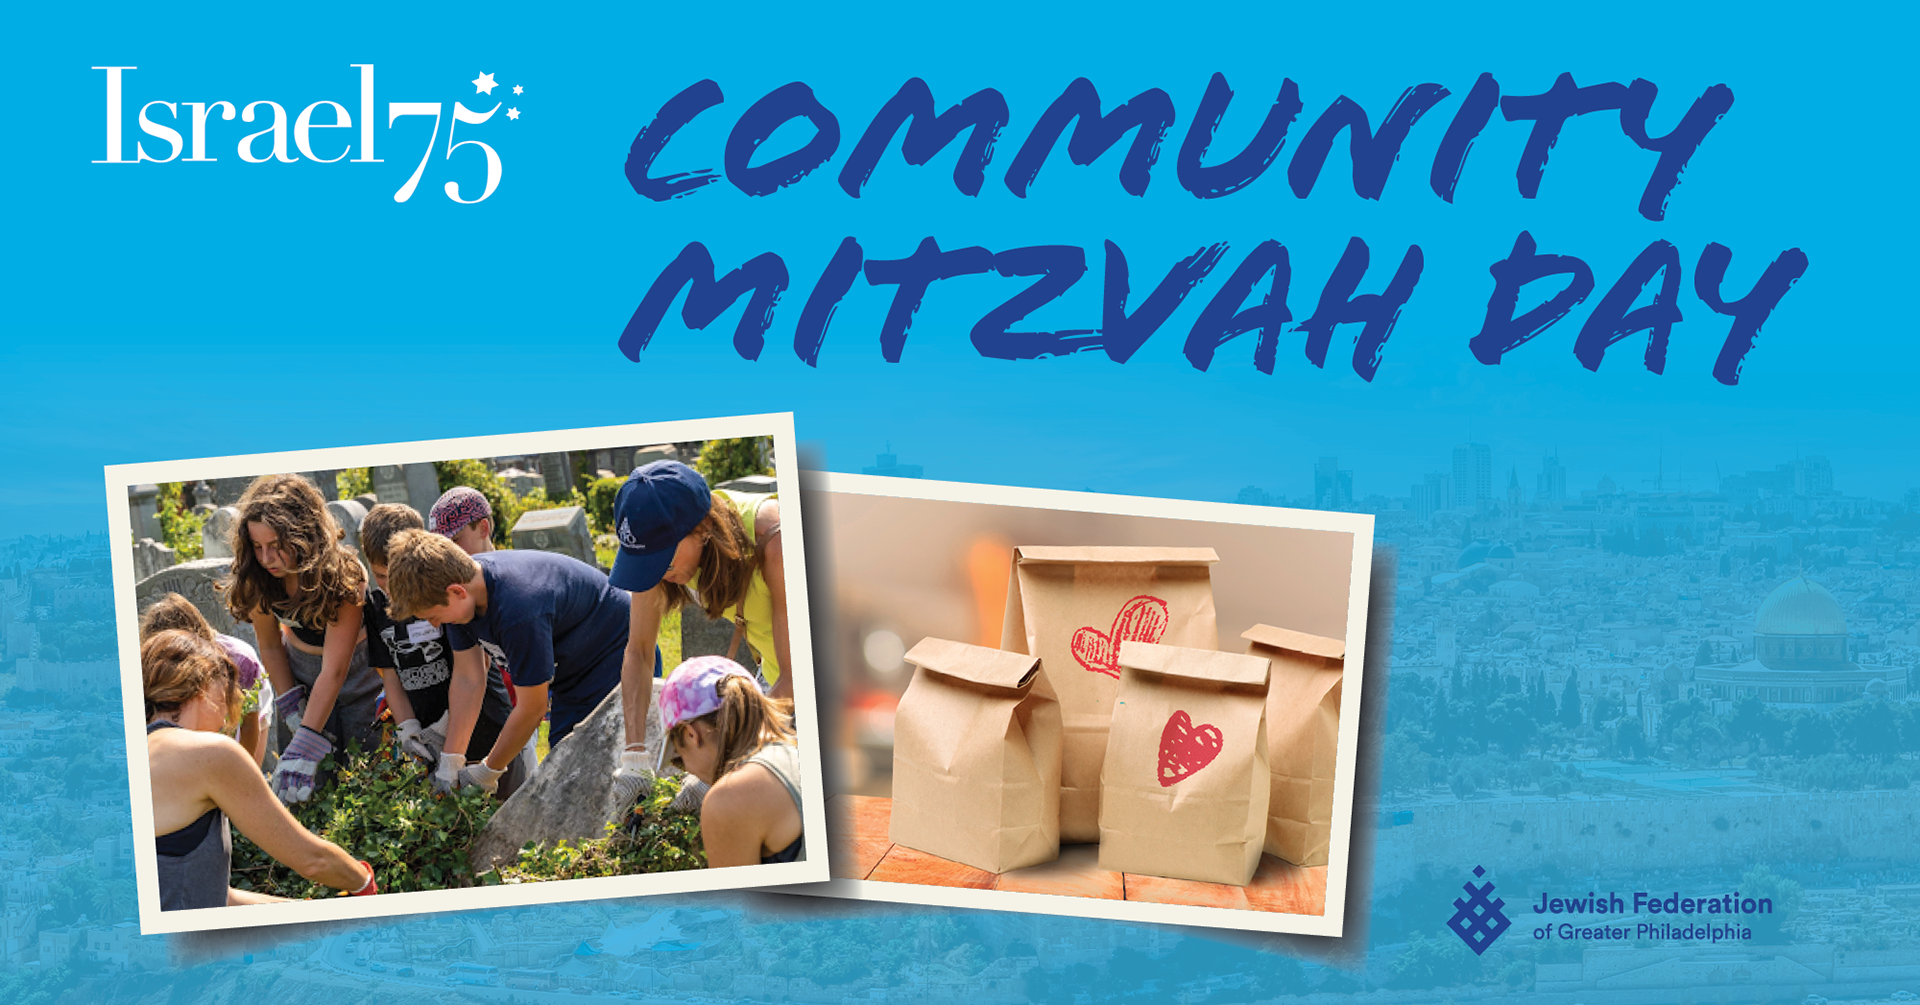 Israel 75: Valuable Volunteering